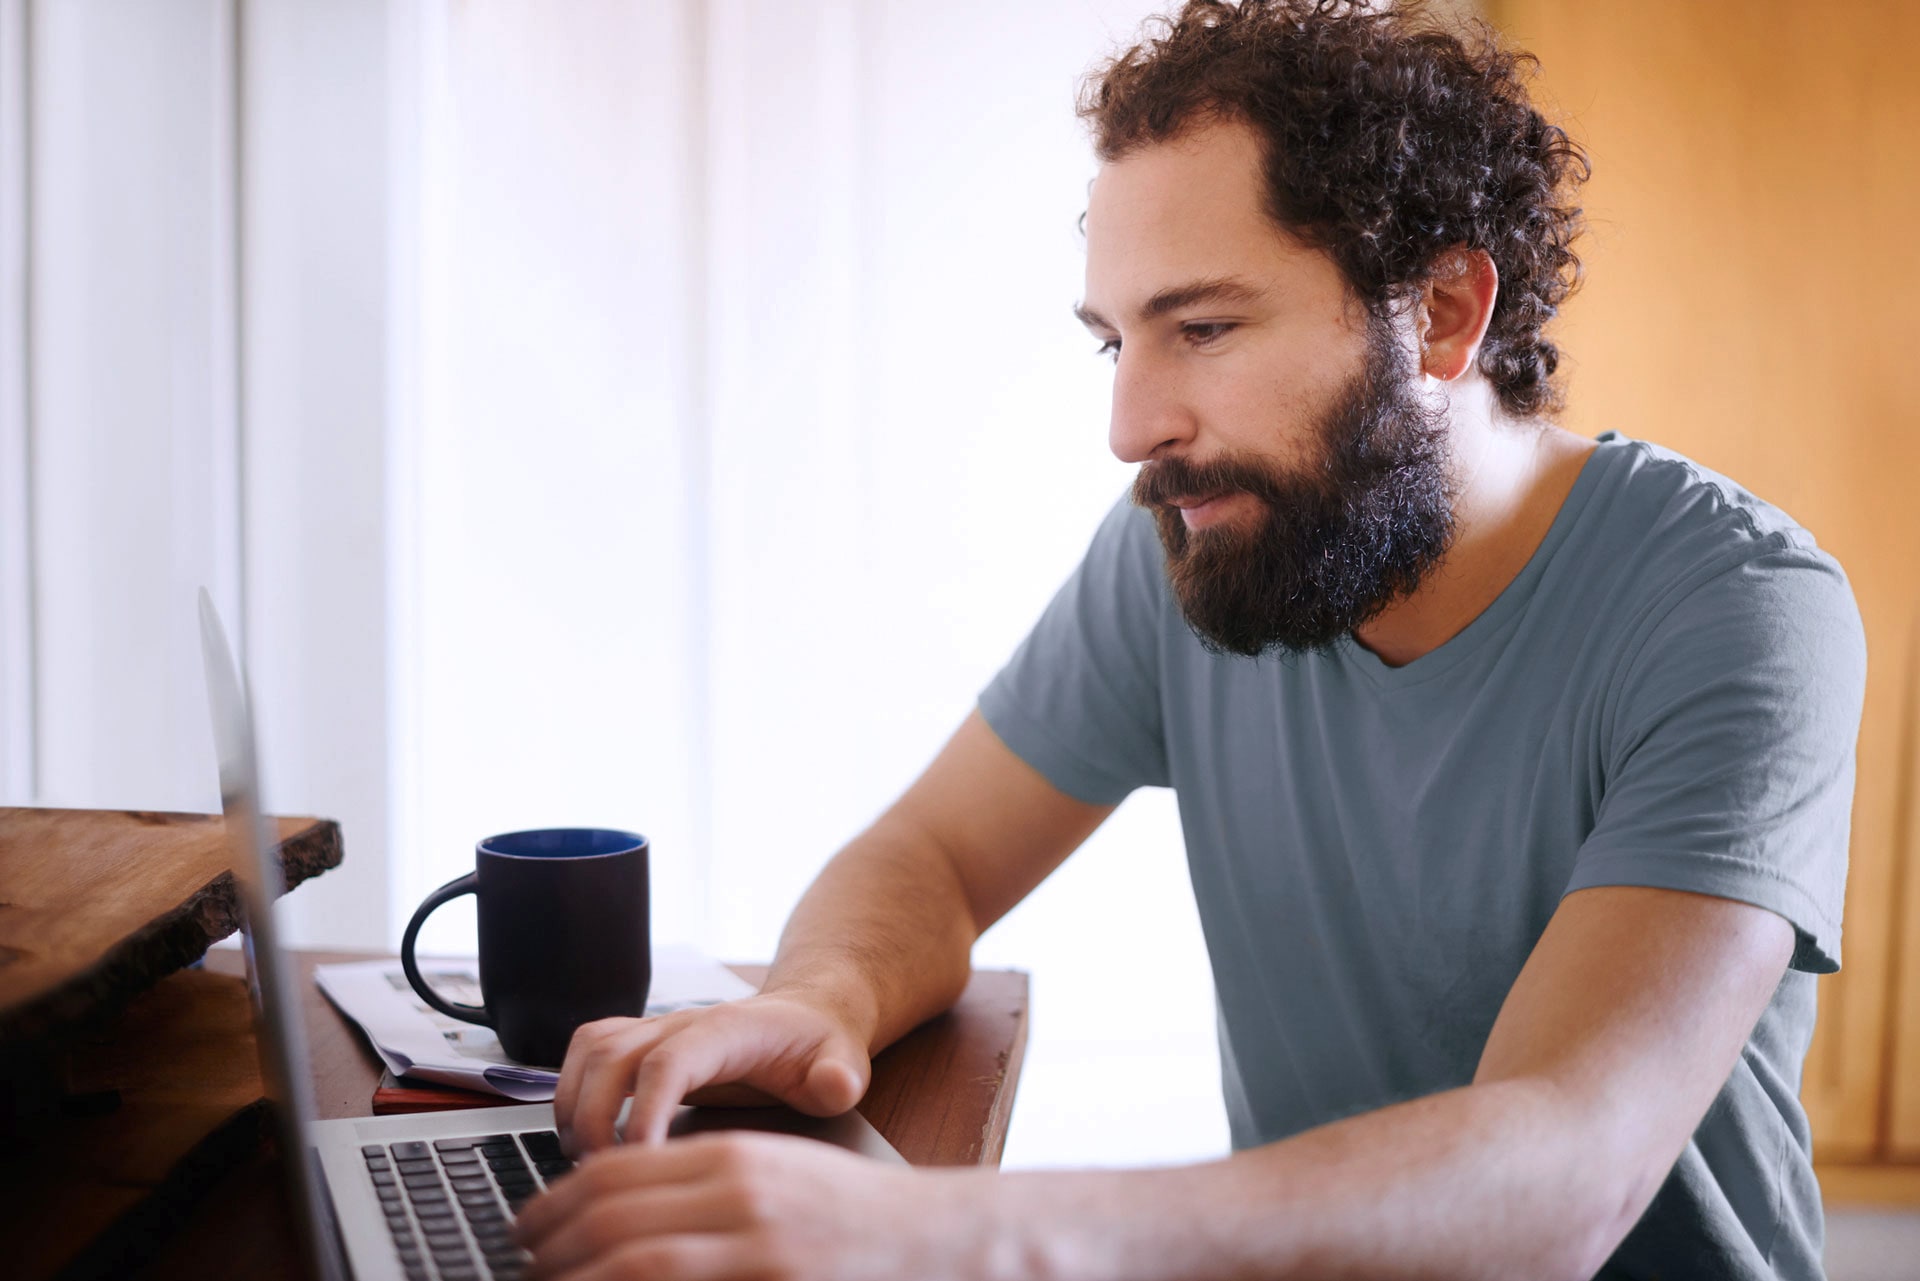 Ein junger Mann mit Bart sitzt tippend vor einem Computer. Neben ihm befindet sich eine Kaffeetasse.